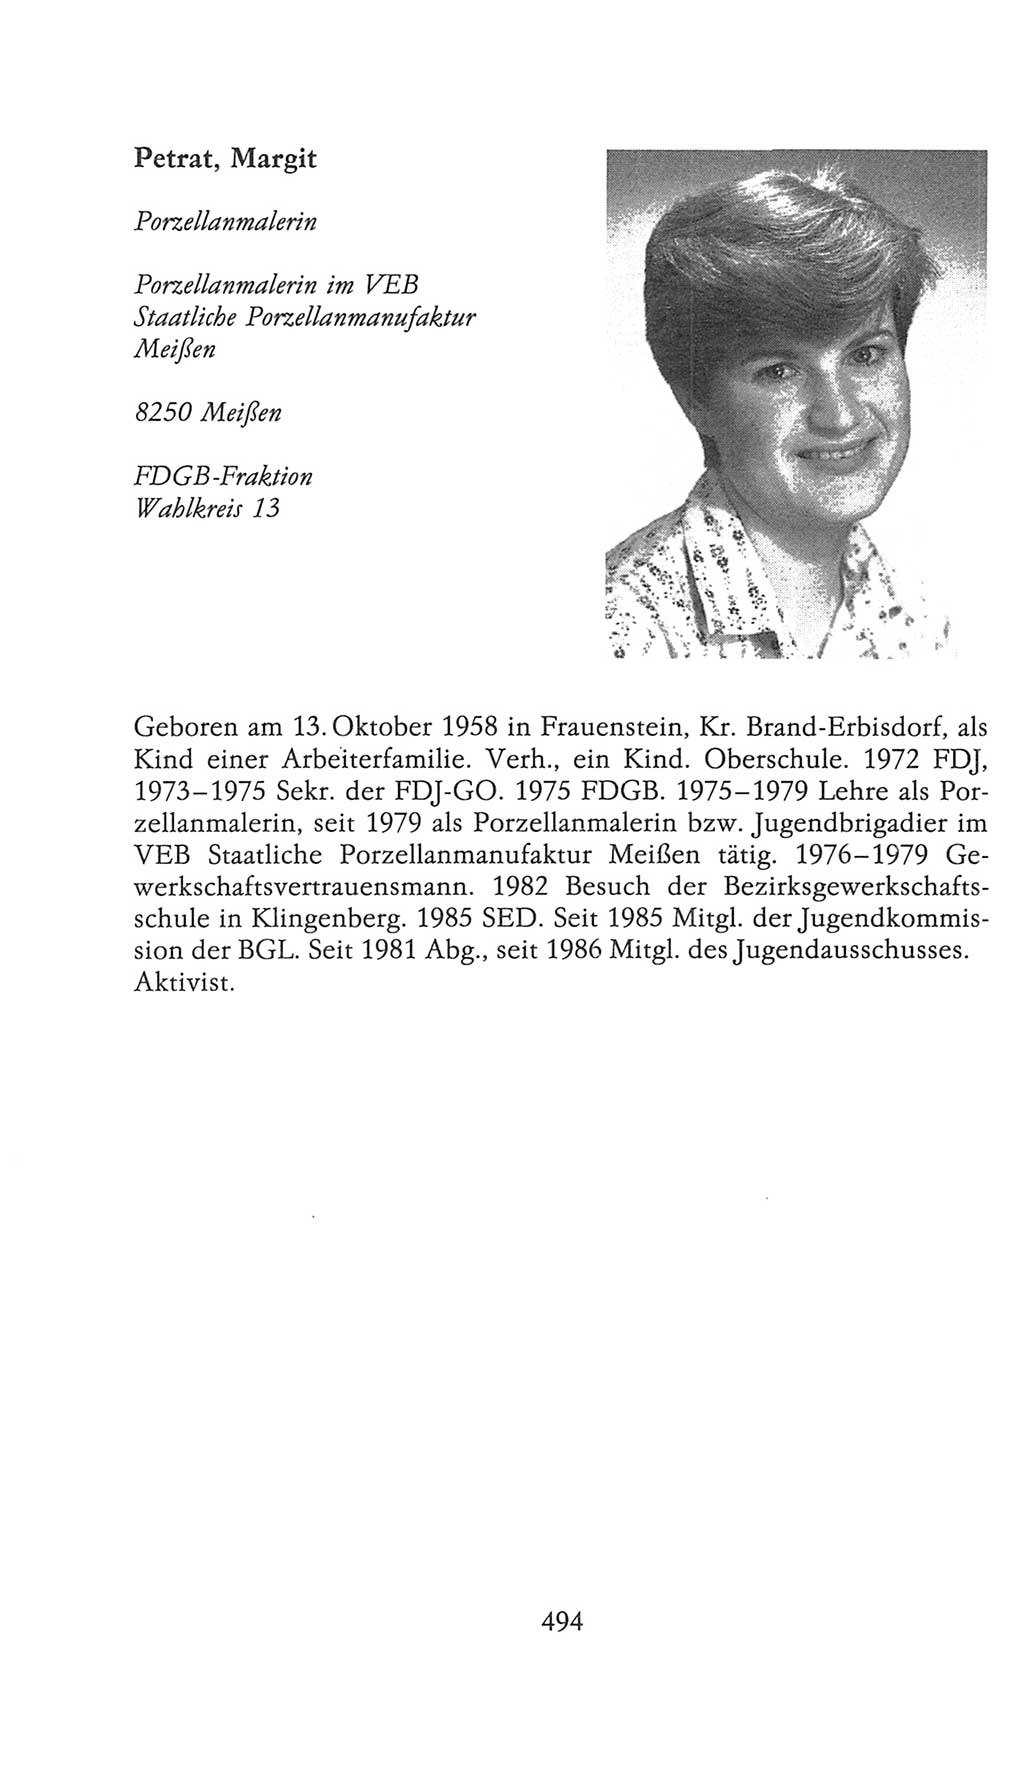 Volkskammer (VK) der Deutschen Demokratischen Republik (DDR), 9. Wahlperiode 1986-1990, Seite 494 (VK. DDR 9. WP. 1986-1990, S. 494)